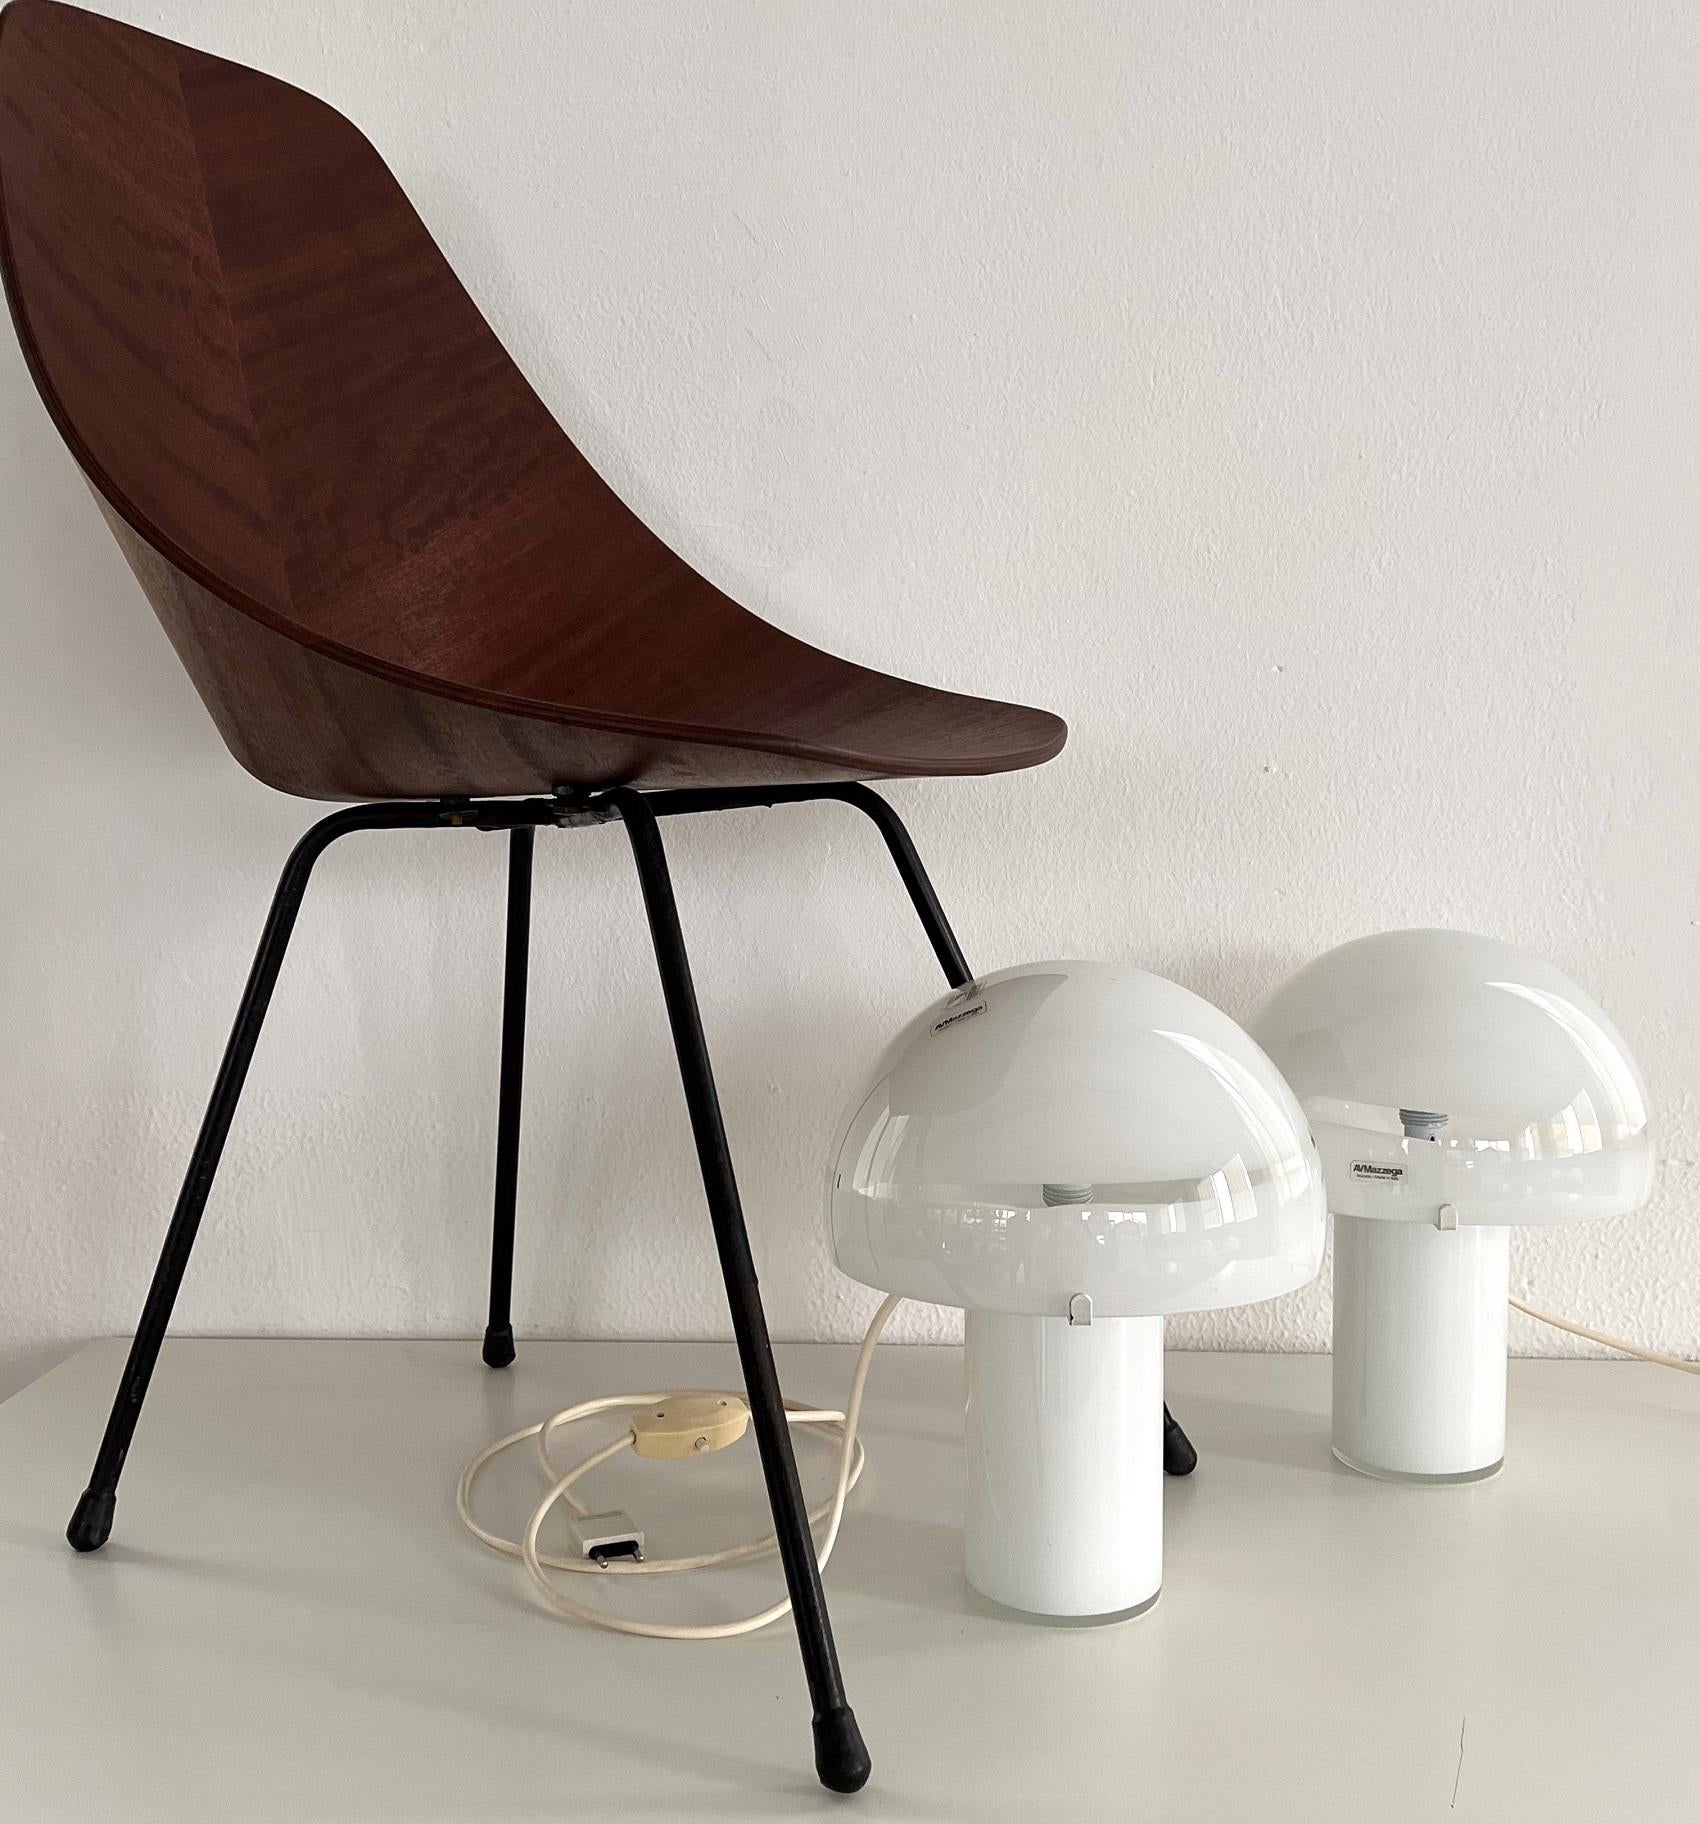 Magnifique ensemble de deux lampes de table Mushroom, produites par Mazzega, Murano, Italie.
Les lampes en forme de champignon sont fabriquées à la main en blanc brillant. La tête du champignon peut être facilement retirée. 
Les lampes de table sont